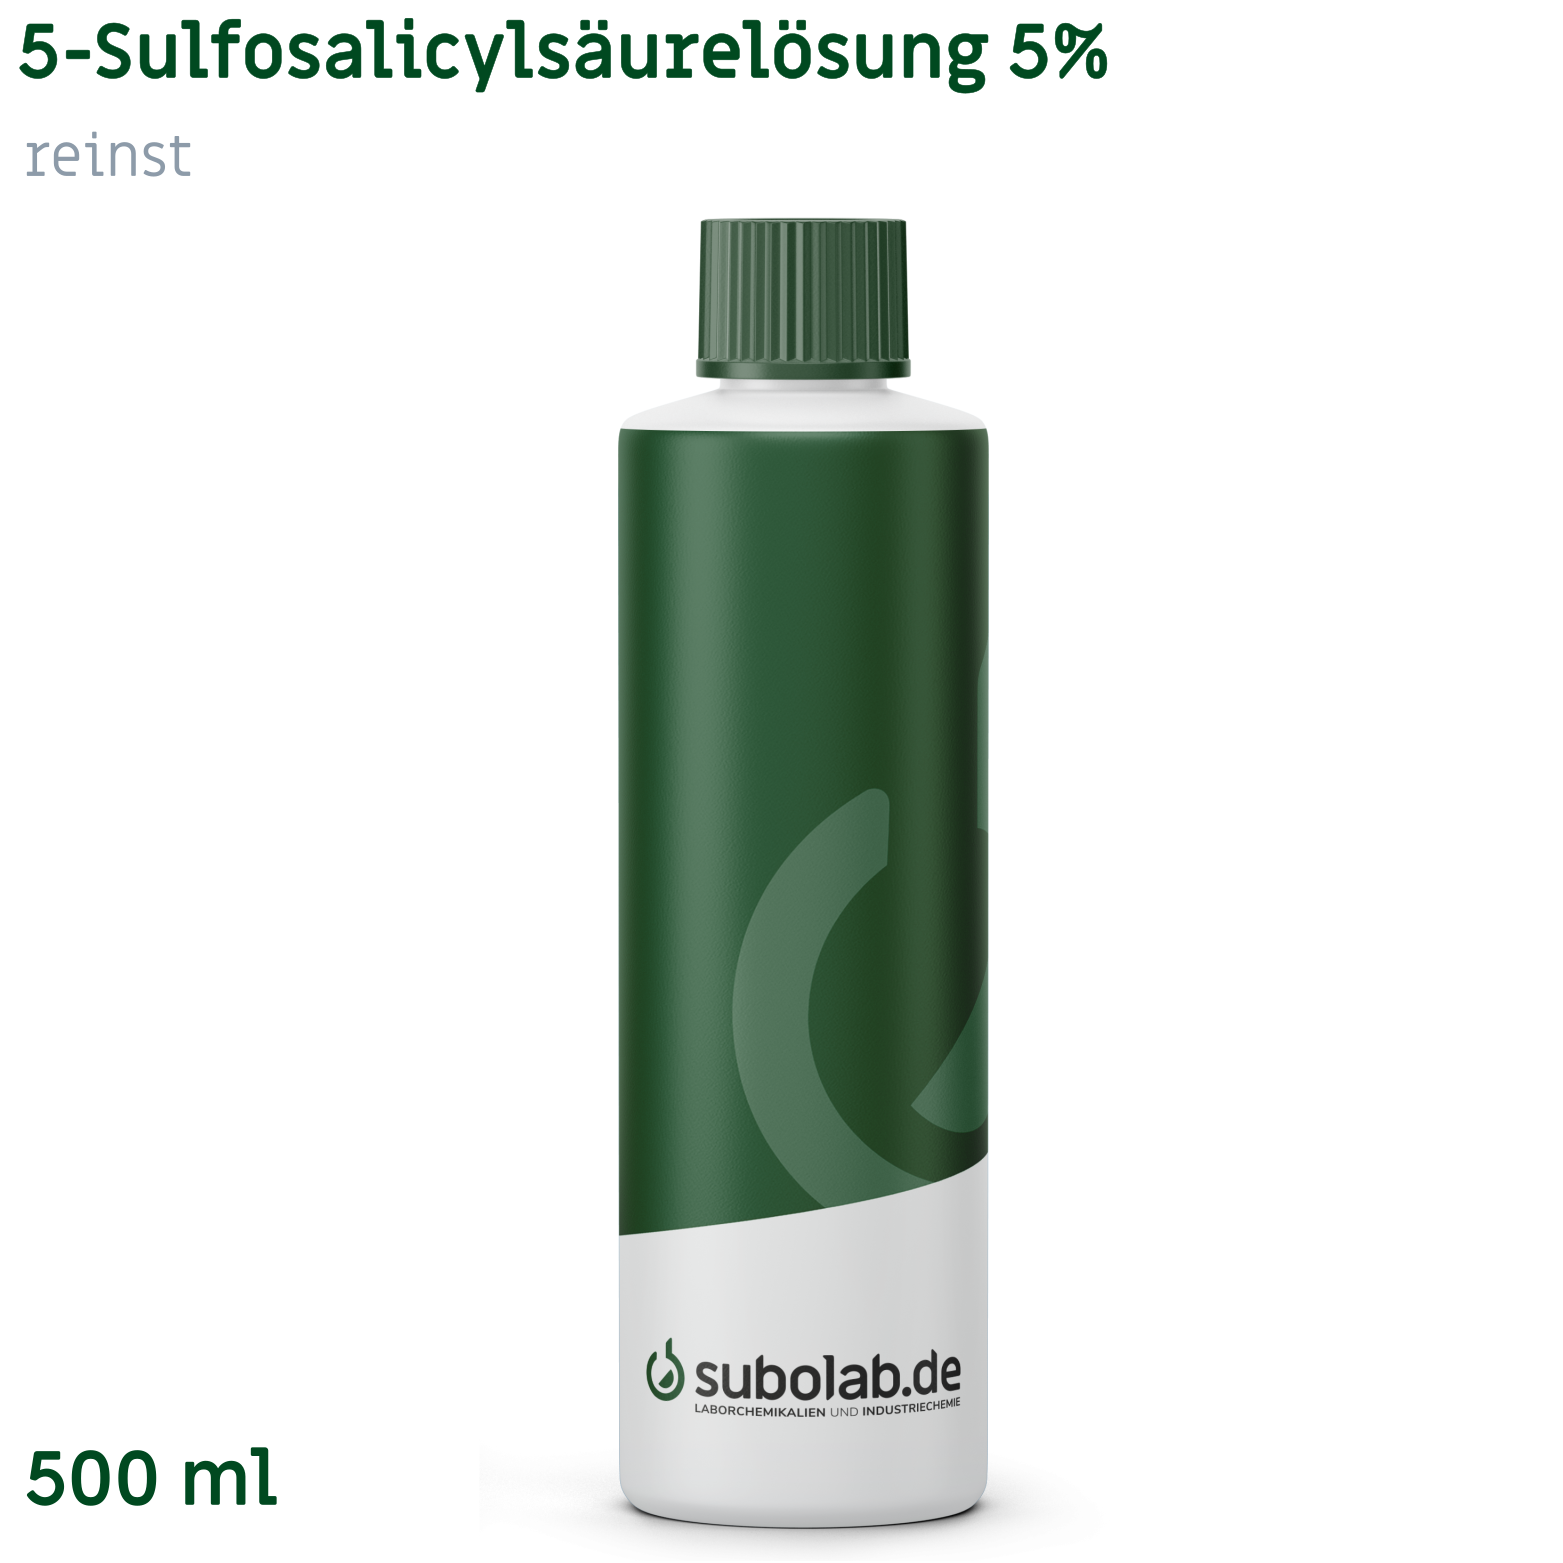 Bild von 5-Sulfosalicylsäurelösung 5% reinst (500 ml)